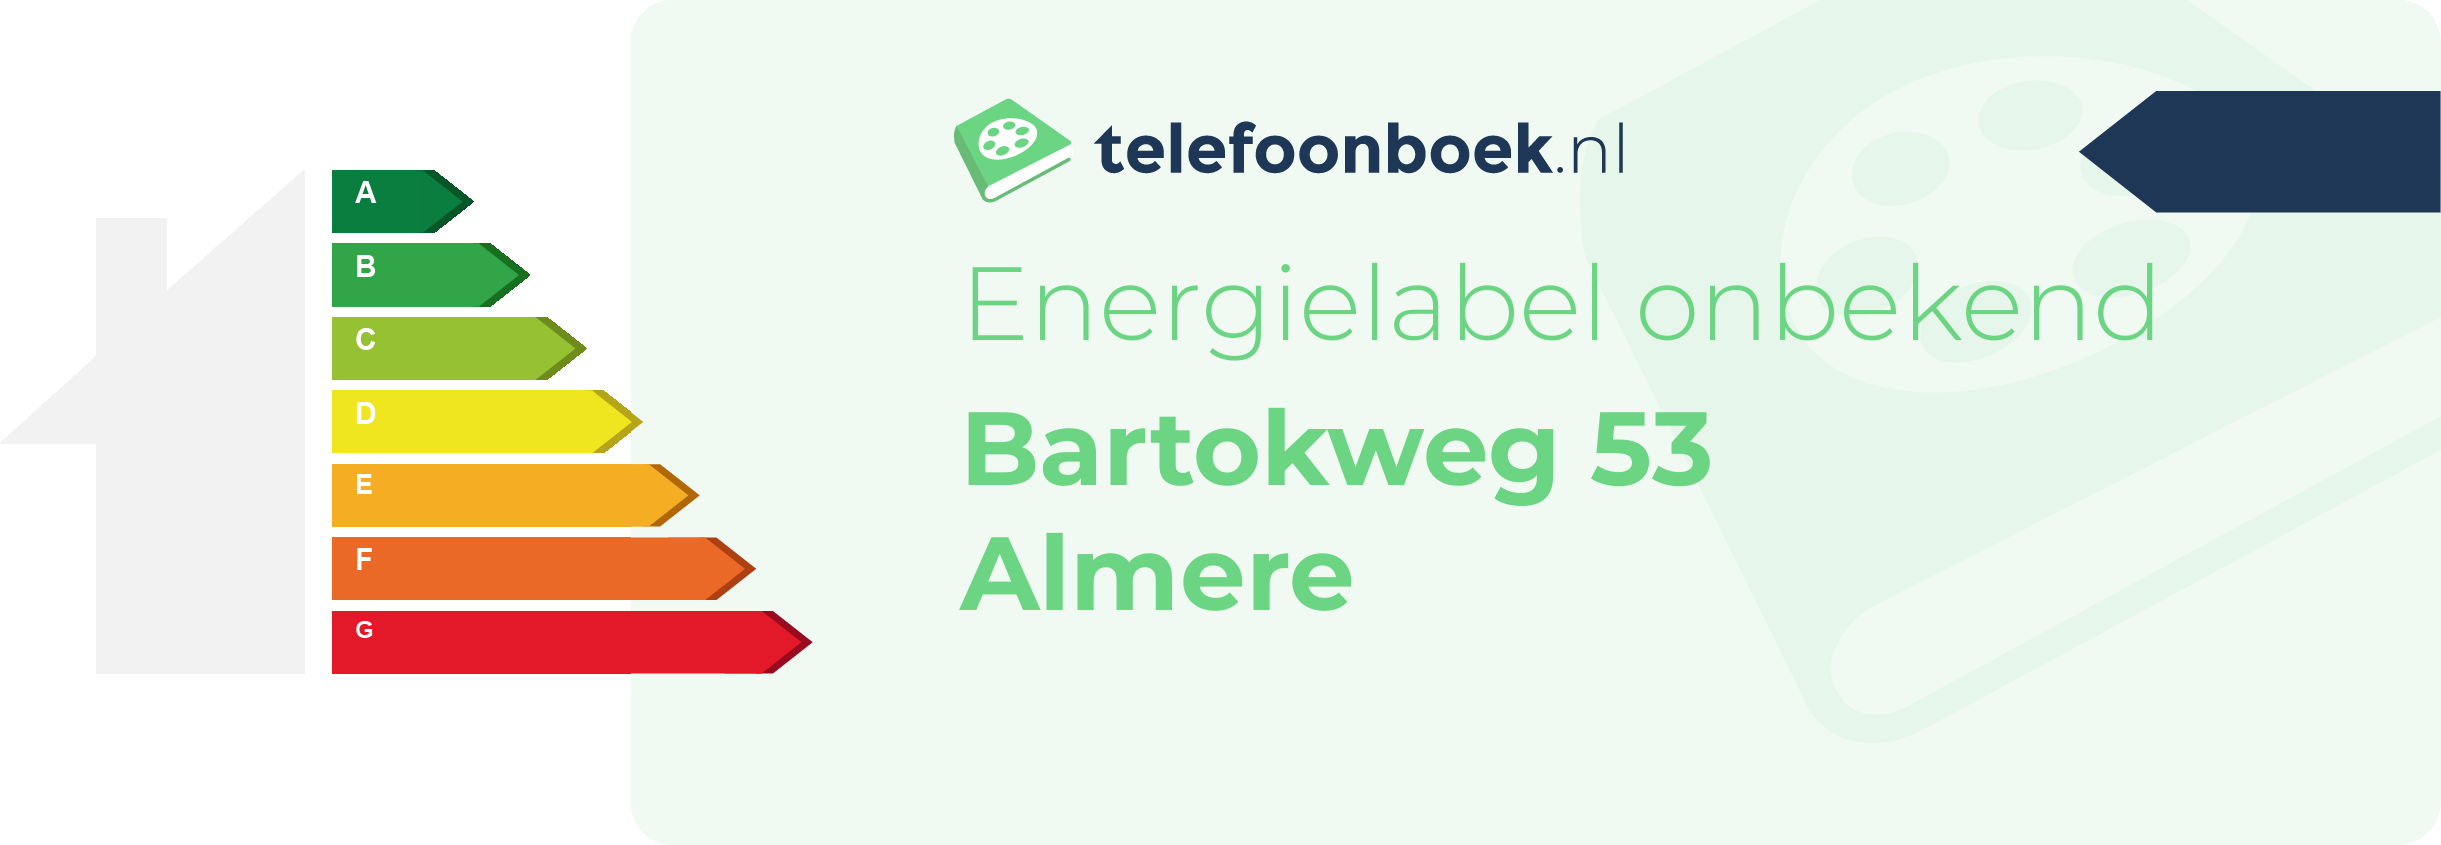 Energielabel Bartokweg 53 Almere